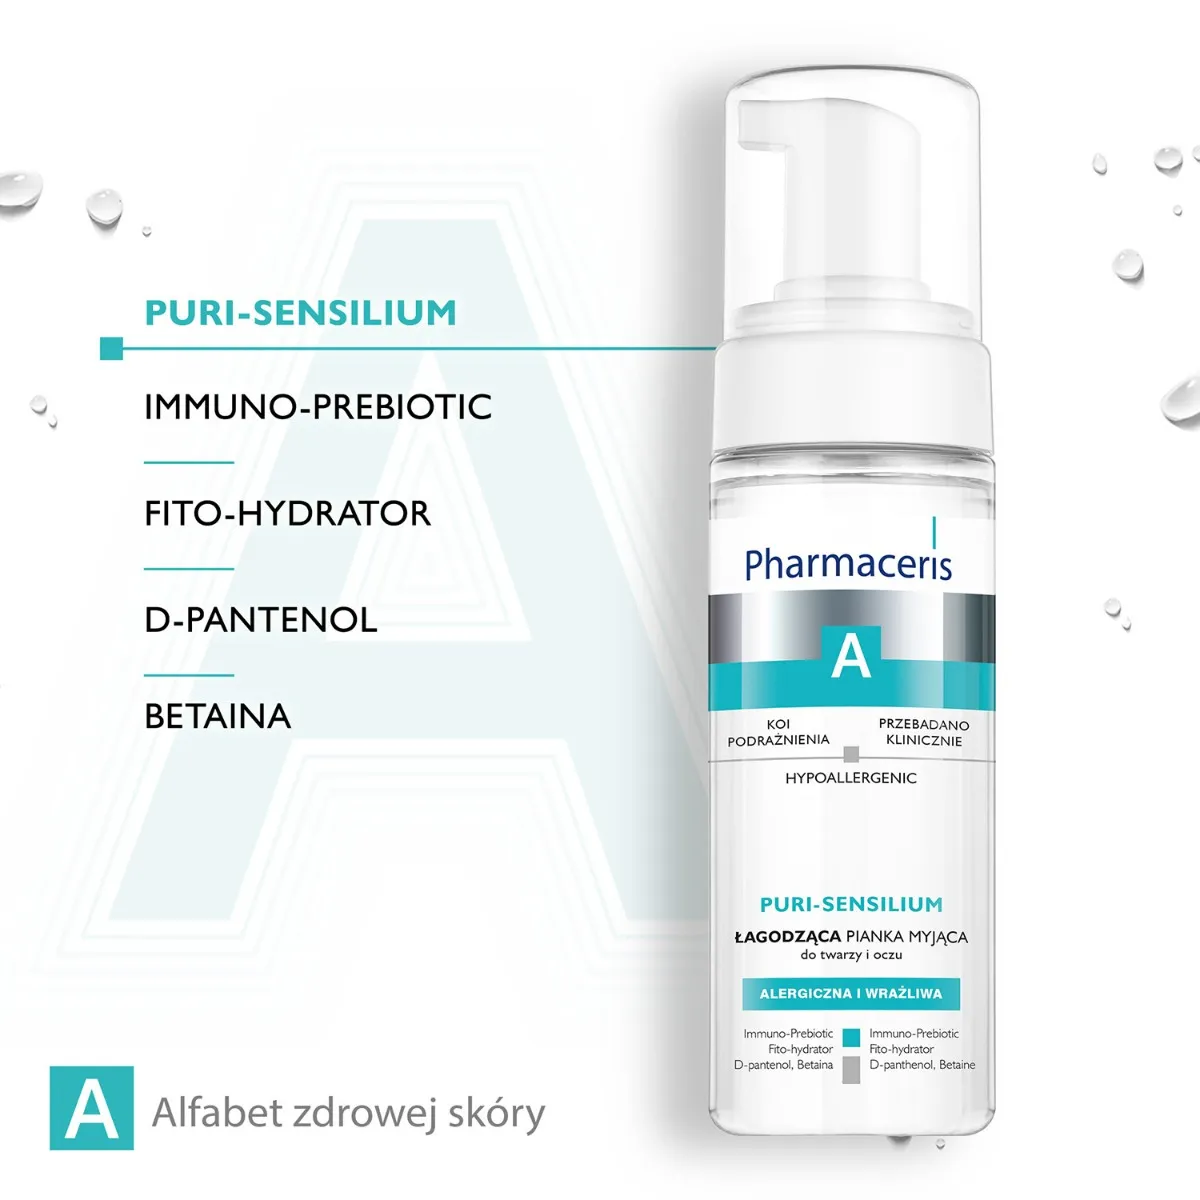 Pharmaceris A Puri-Sensilium łagodząca pianka myjąca do twarzy i oczu, 150 ml 